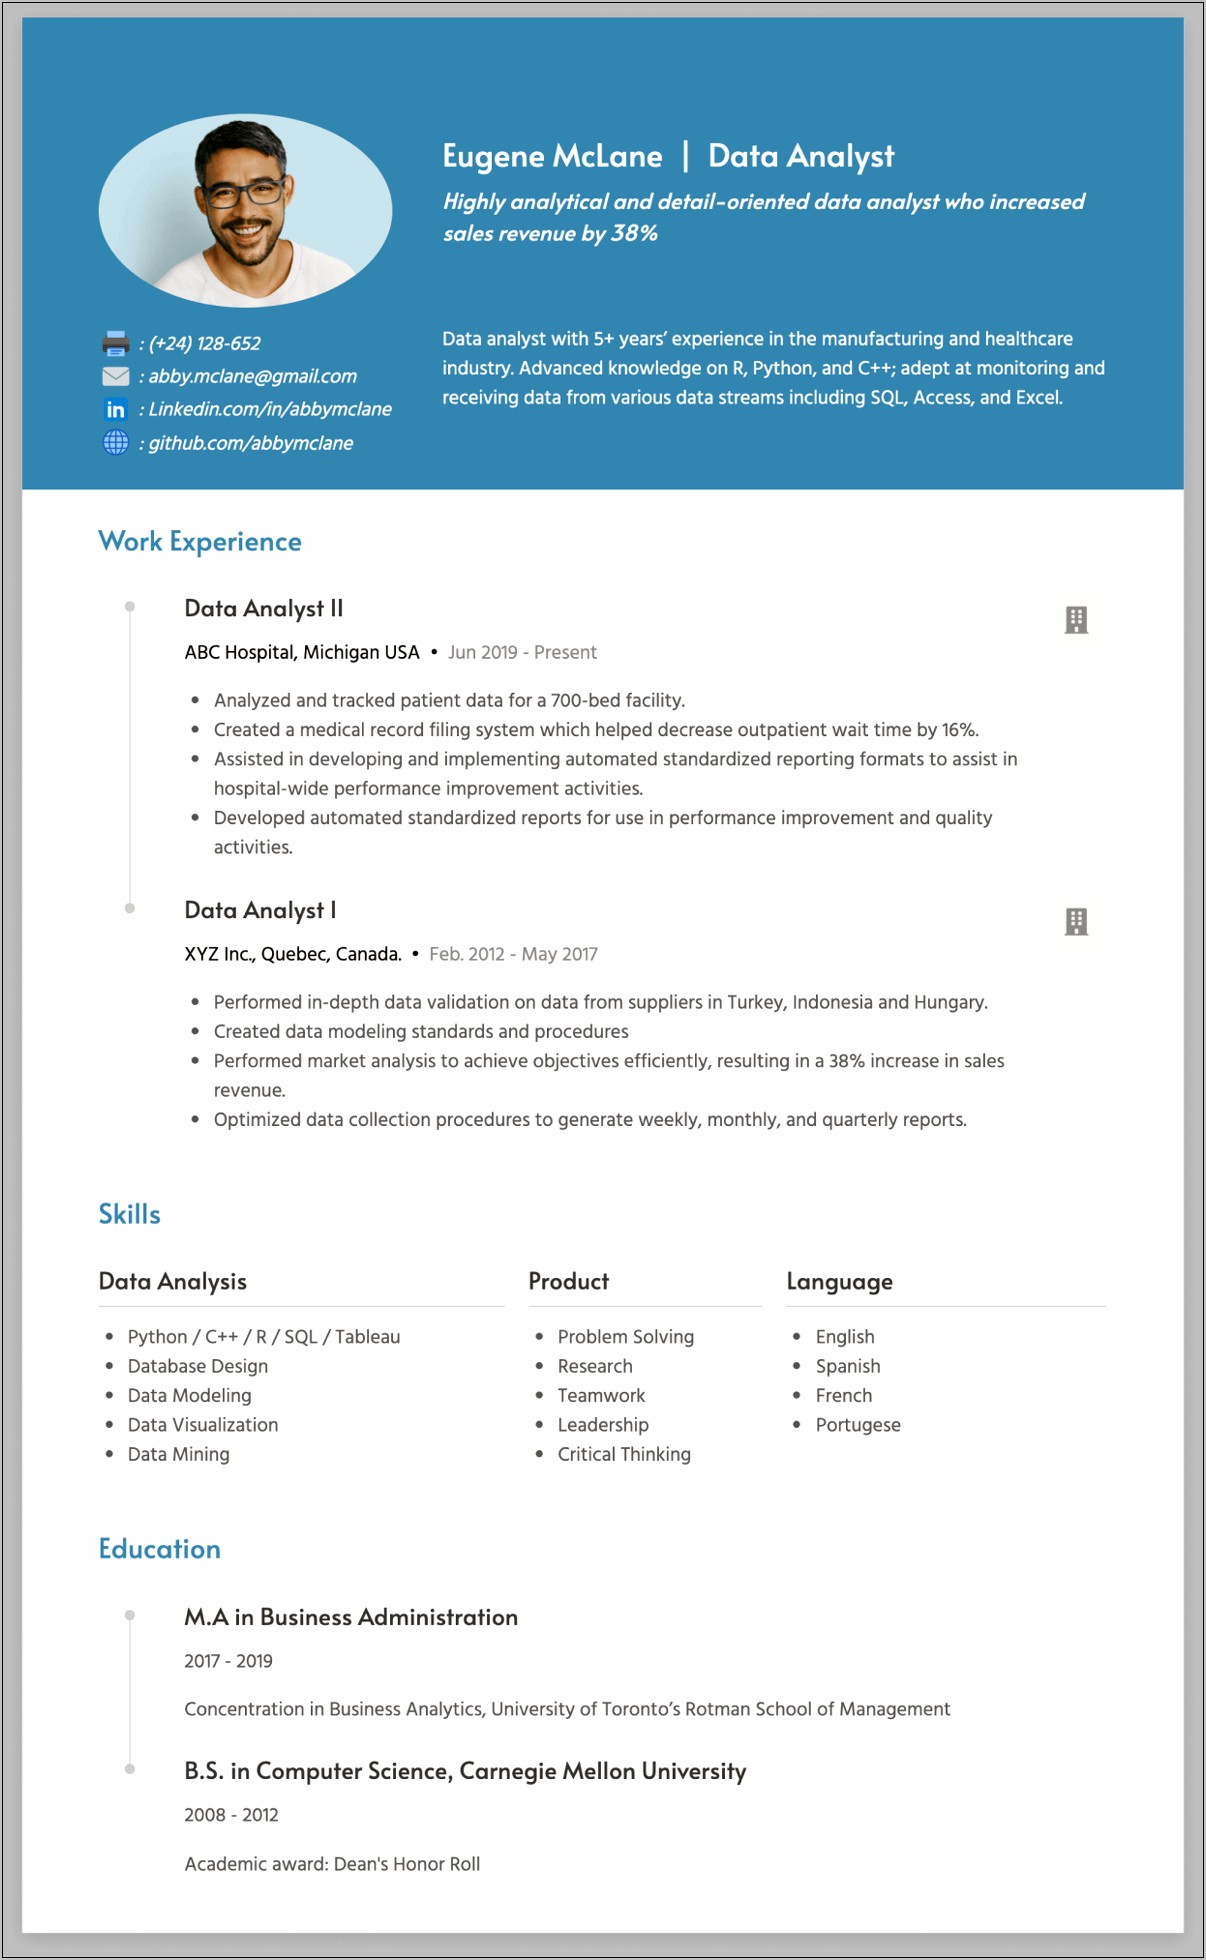 Data Modeler Job Description Resume